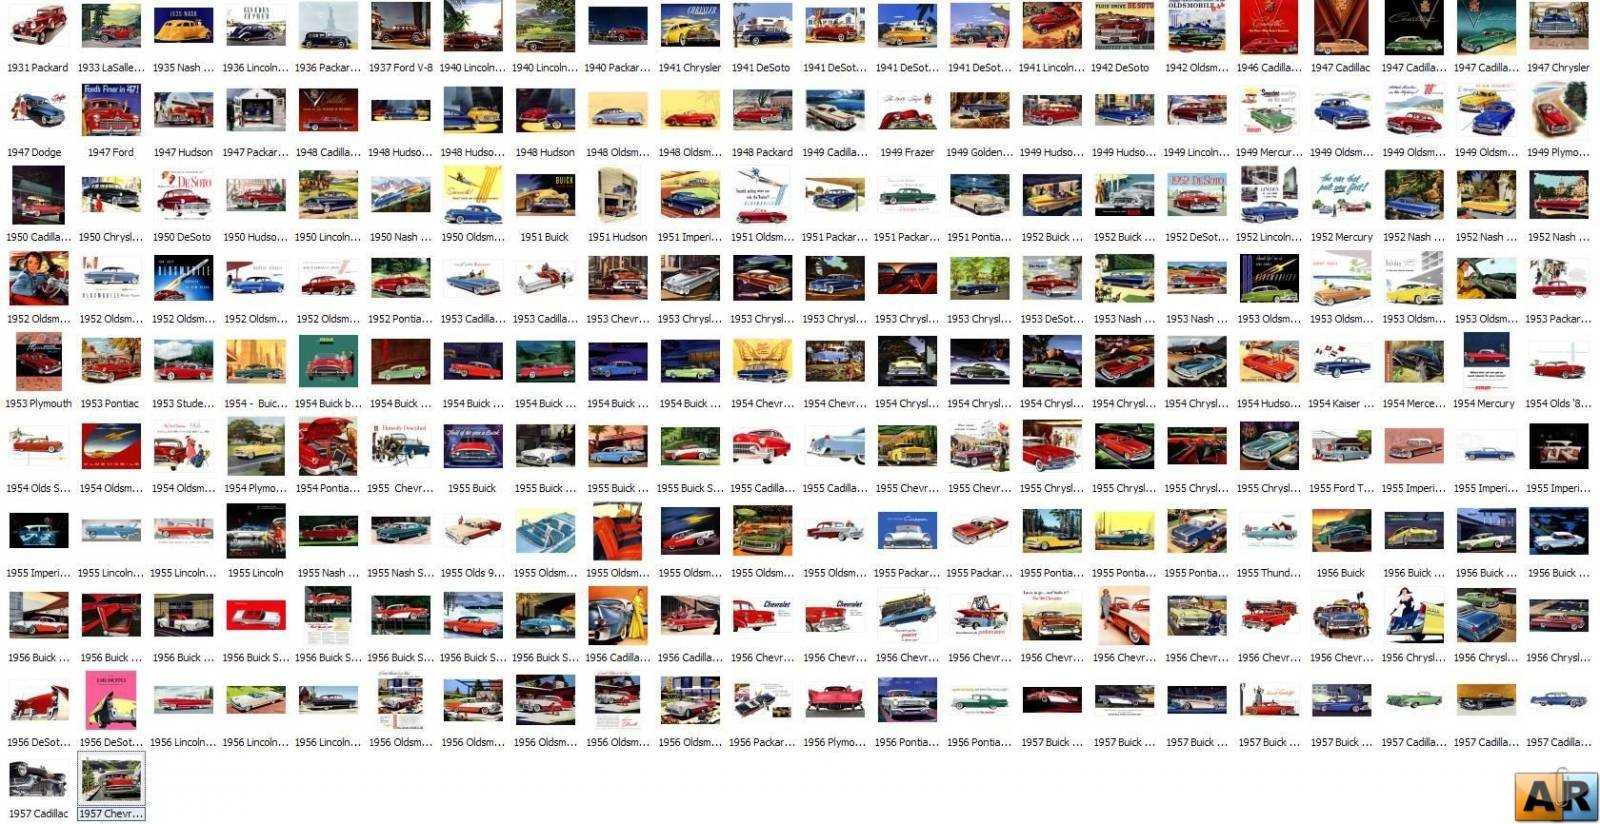 Фото всех марок машин с названиями фото